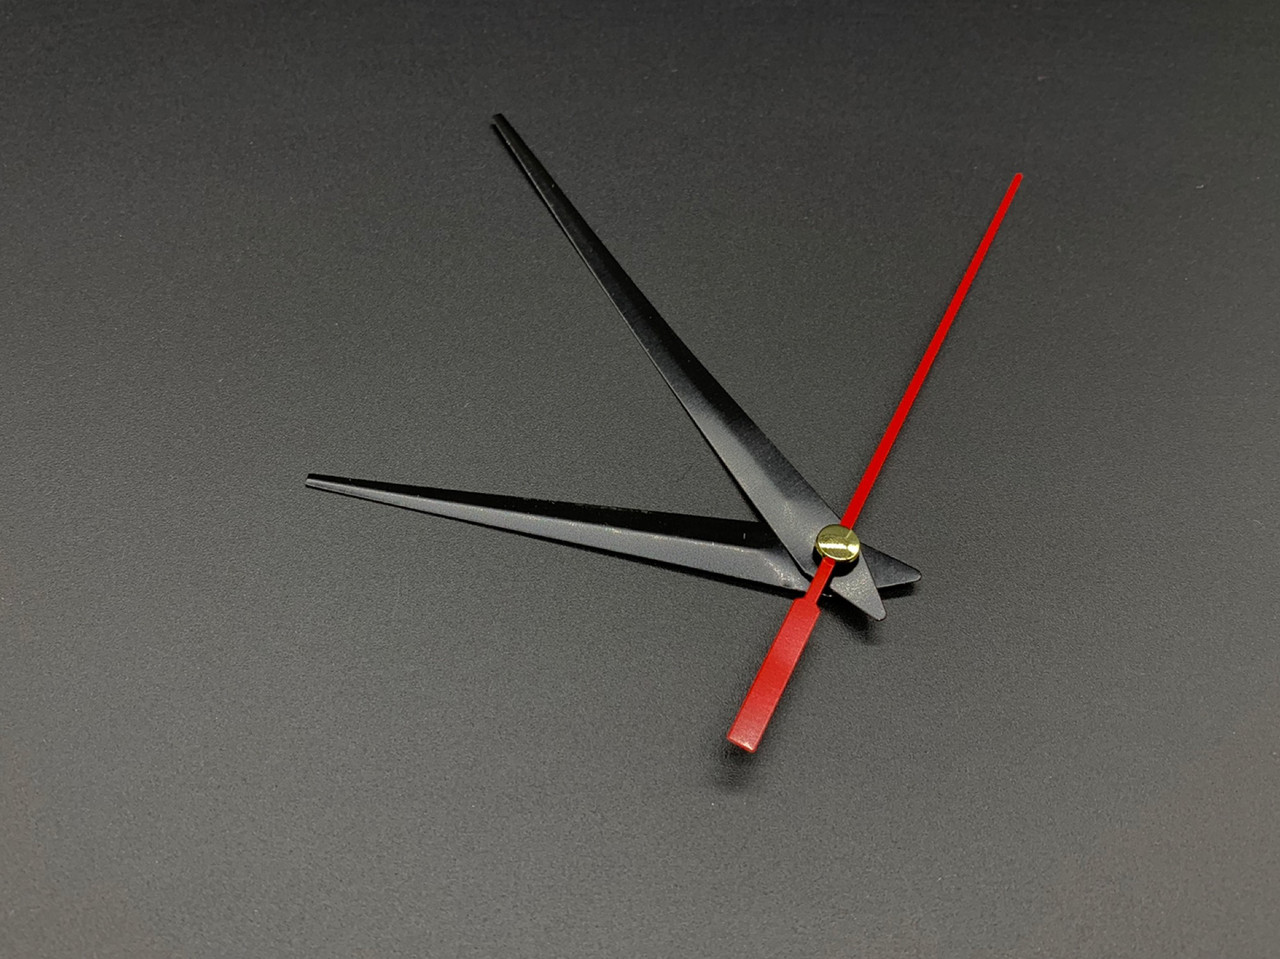 Стрілки годинникові для настінних годинників чорні та червоні металеві глянцеві 3 стрілки в наборі 9х9.5х7.5 см